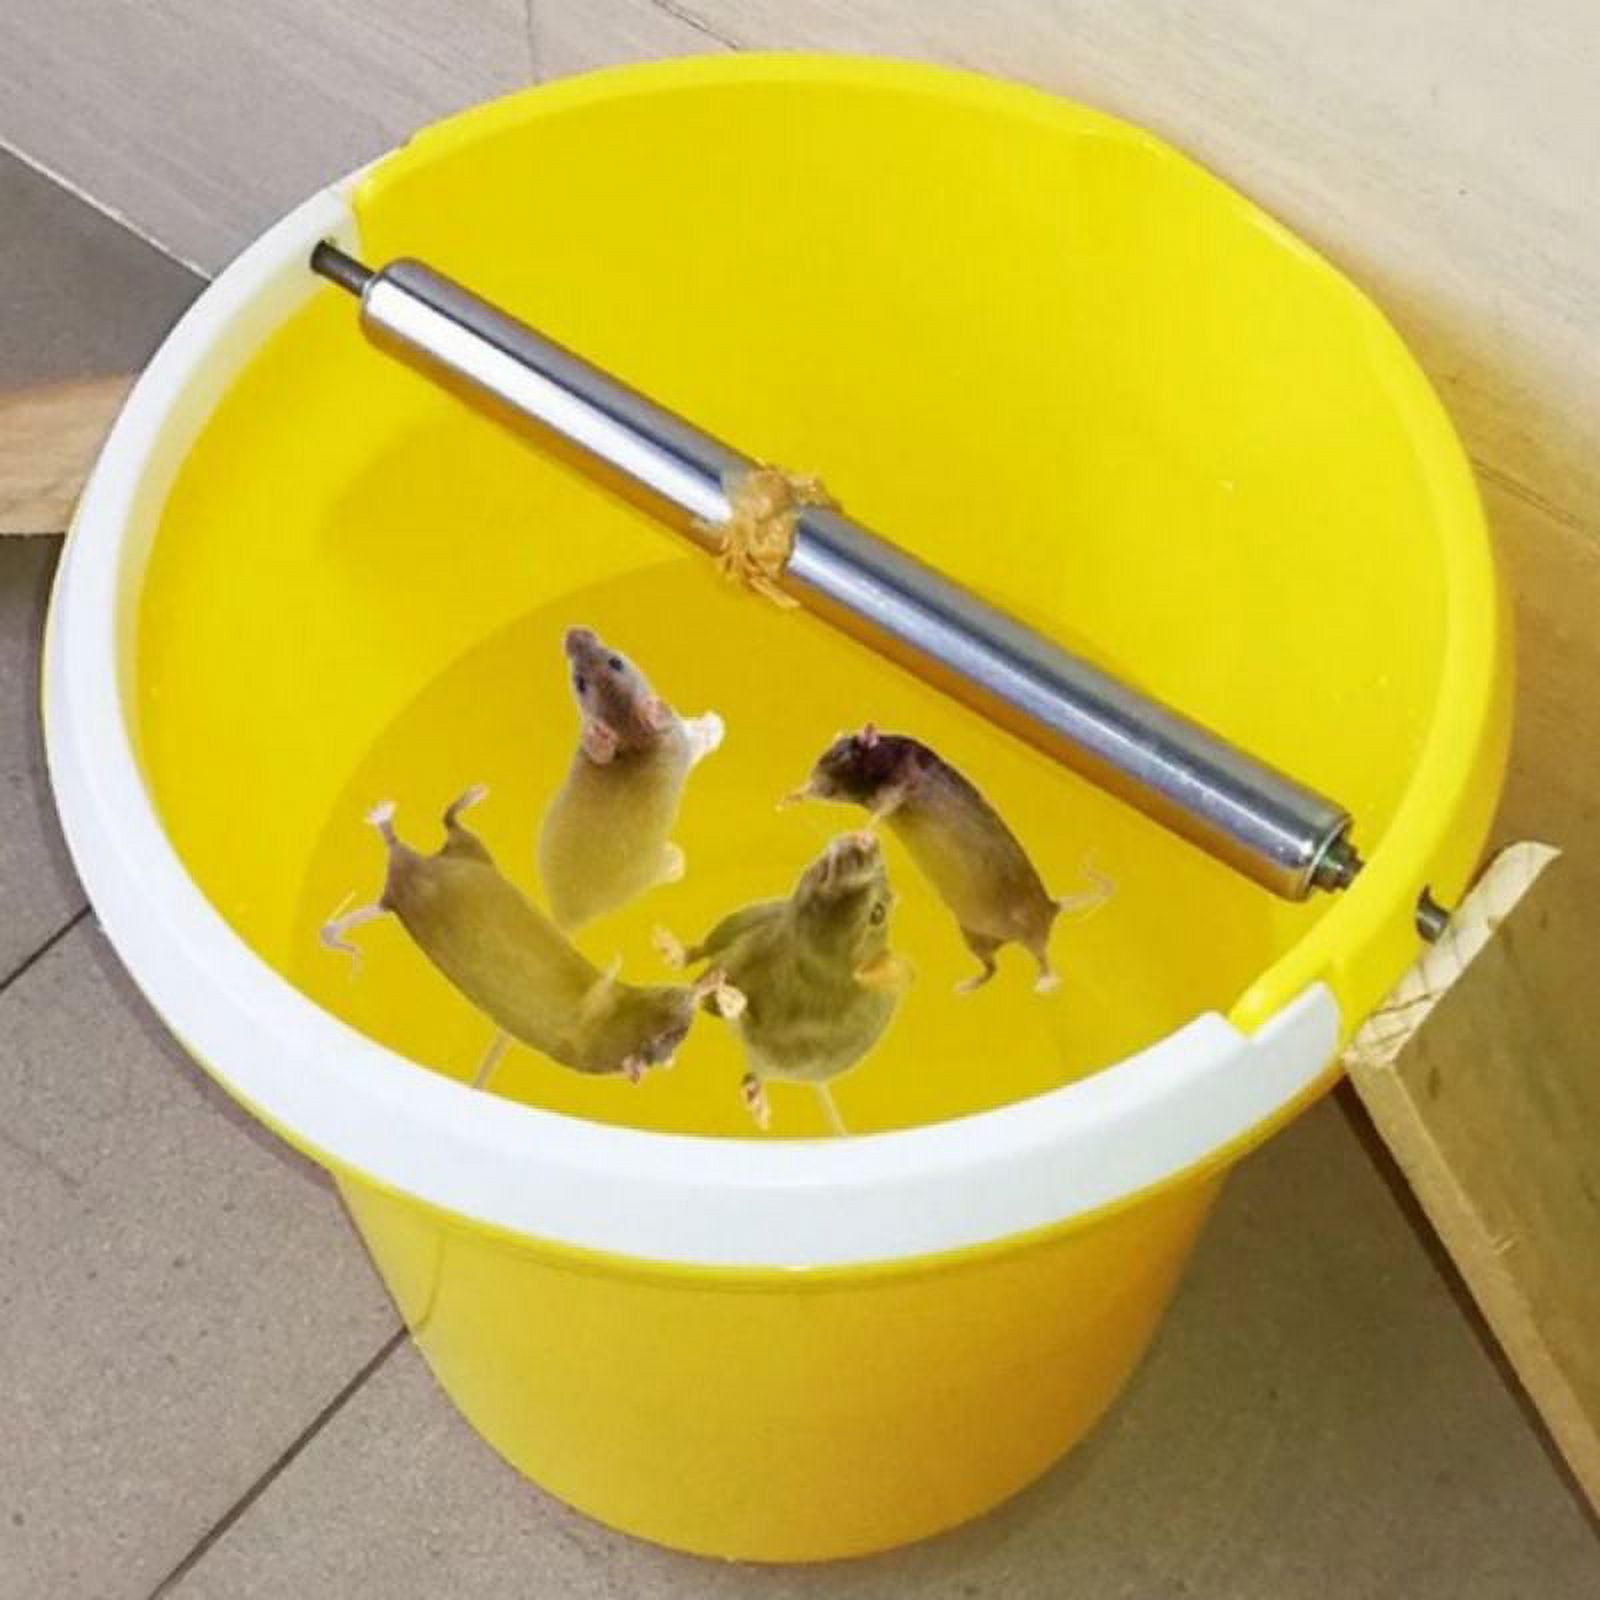 chipmunk / rodent bucket trap 